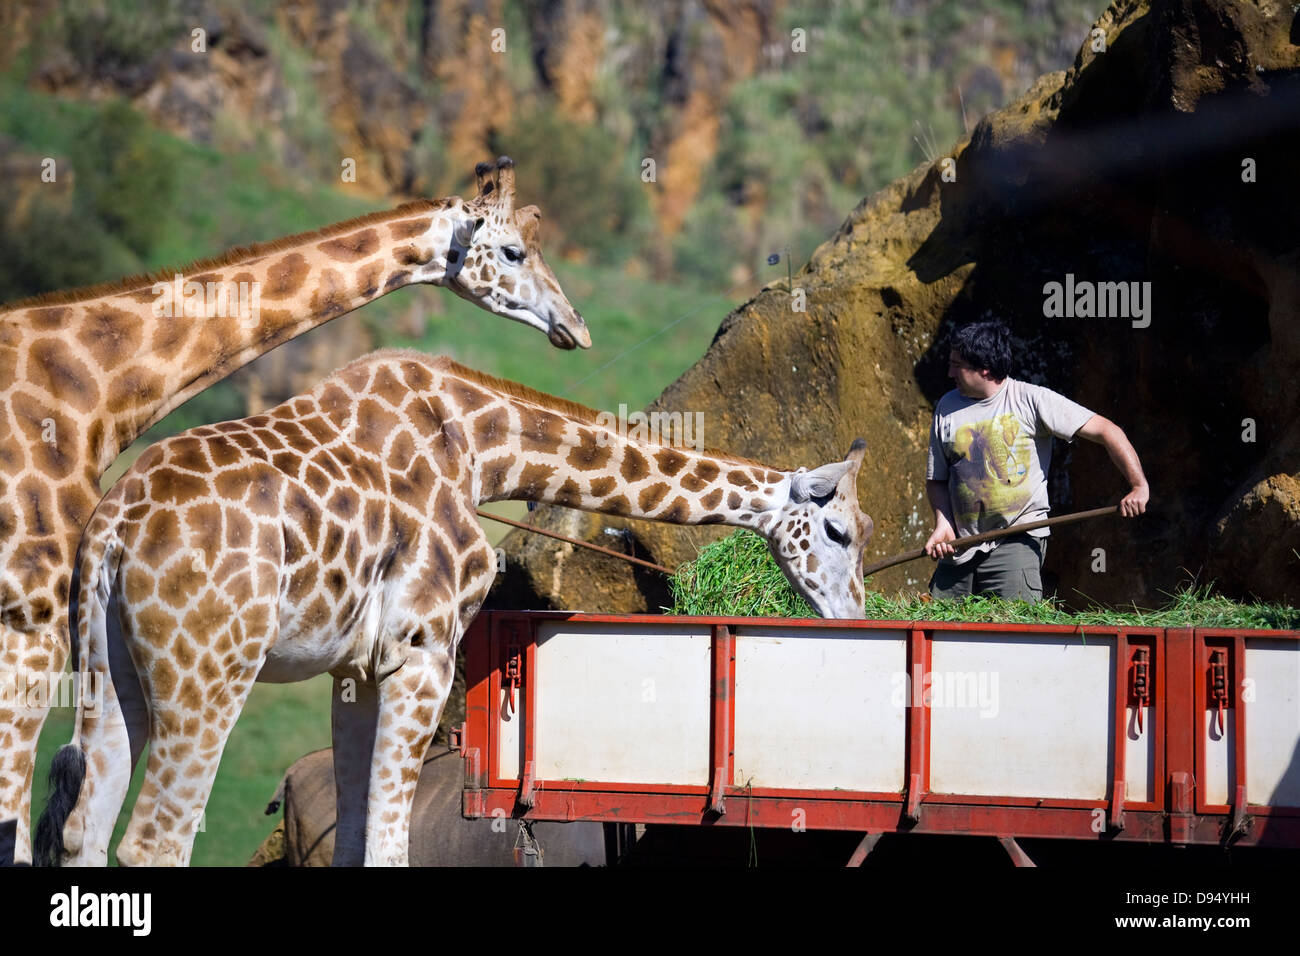 giraffe (Giraffa camelopardalis). Eating Stock Photo